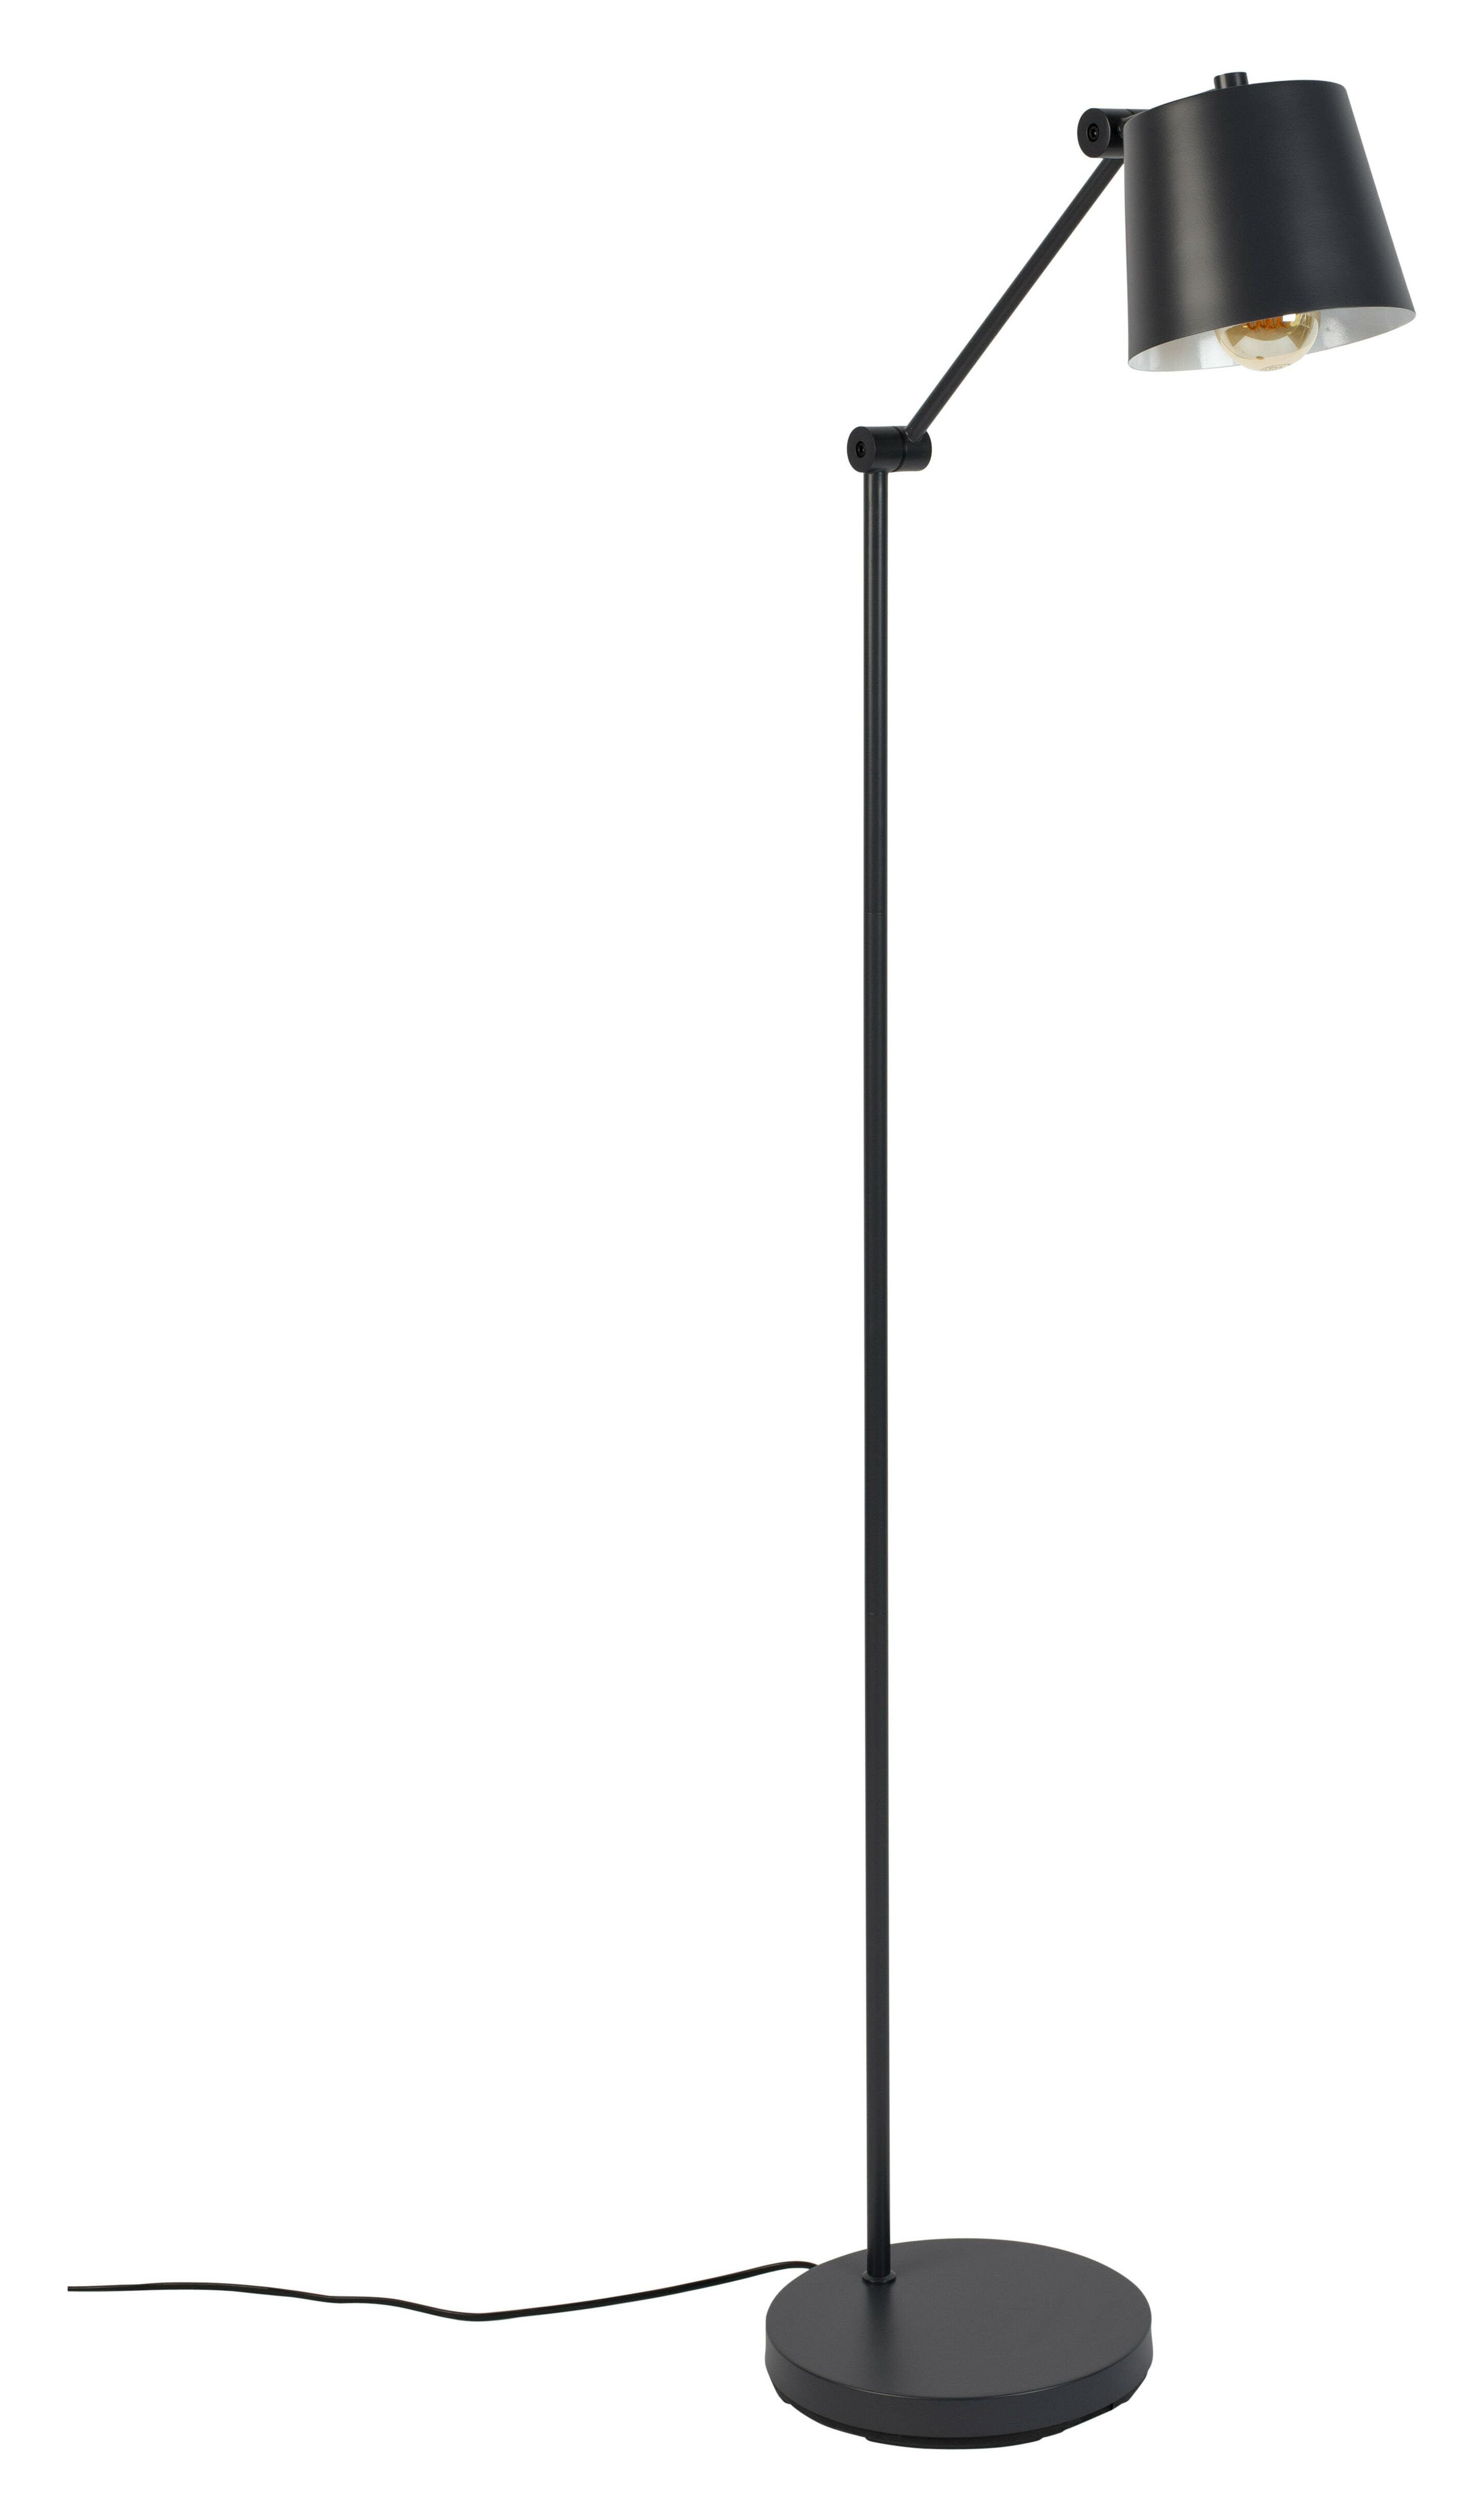 ZILT Vloerlamp Bret 124cm hoog - Zwart